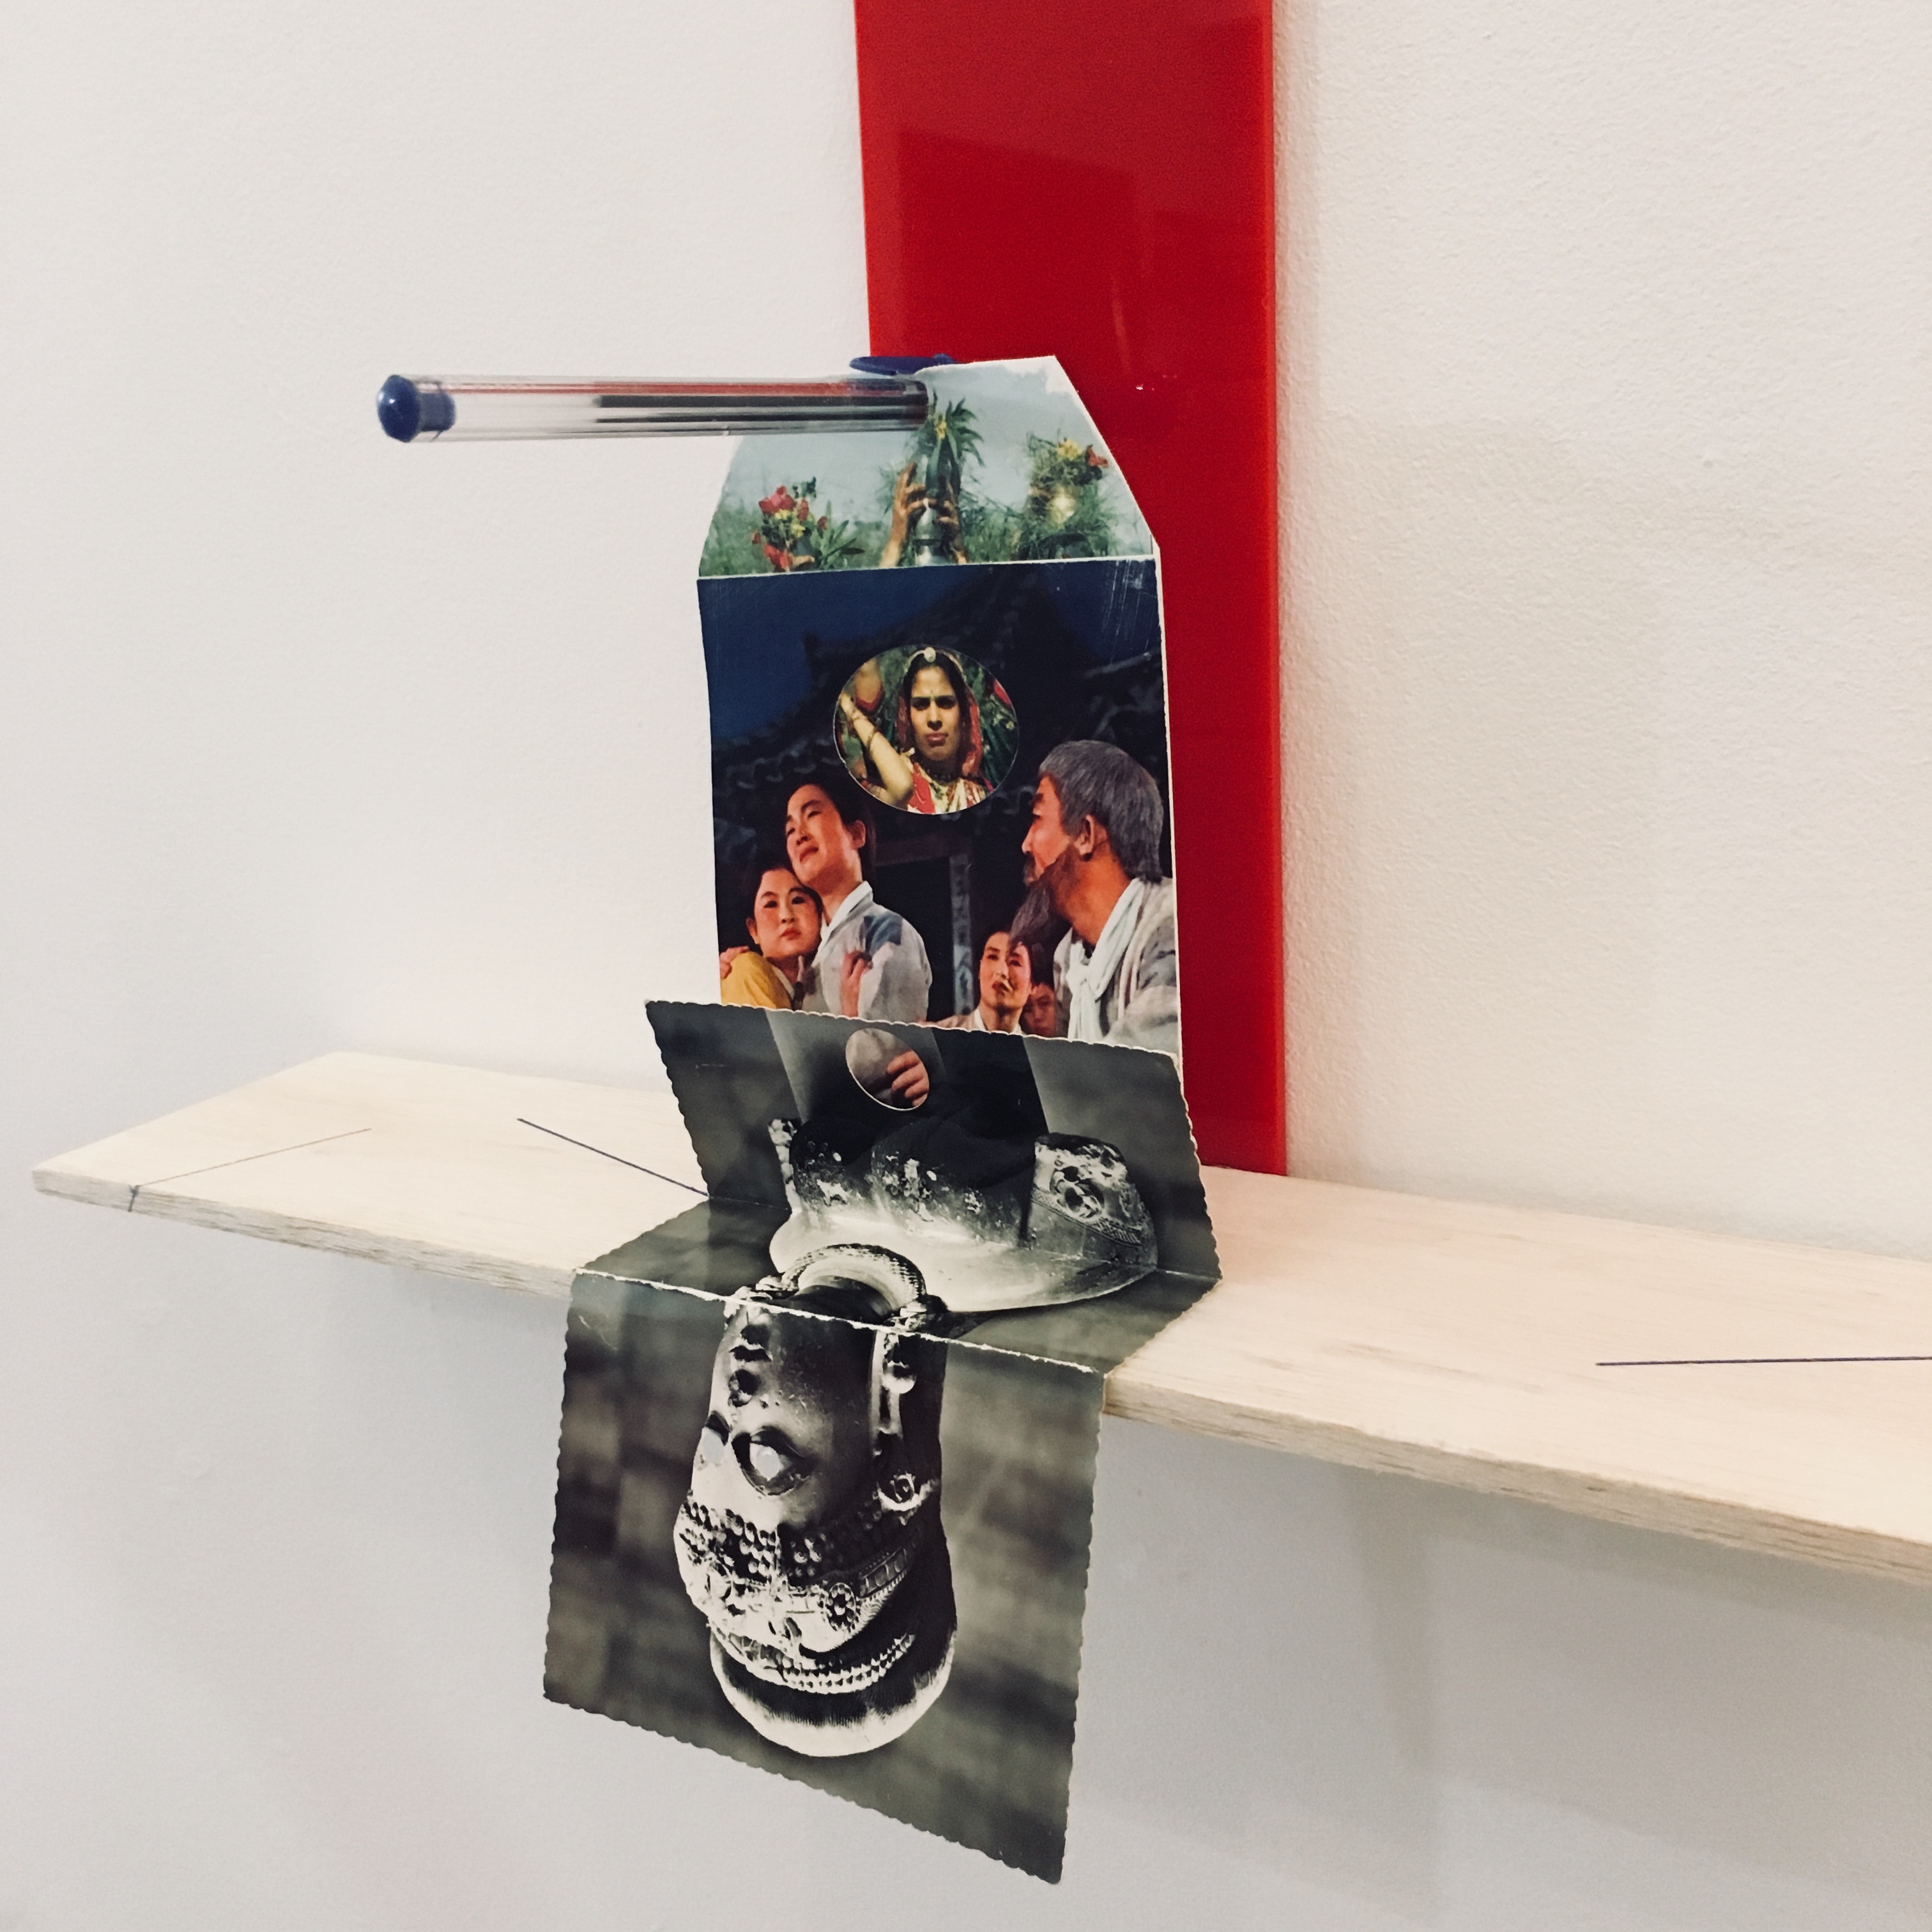 Gê Orthof, Máquinas Mínimas, Salé opera buste de femme, Acrílico, postais, balsa e caneta bic, 35 x 40 x 15 cm, Desenho assemblage, 2018 detalhe